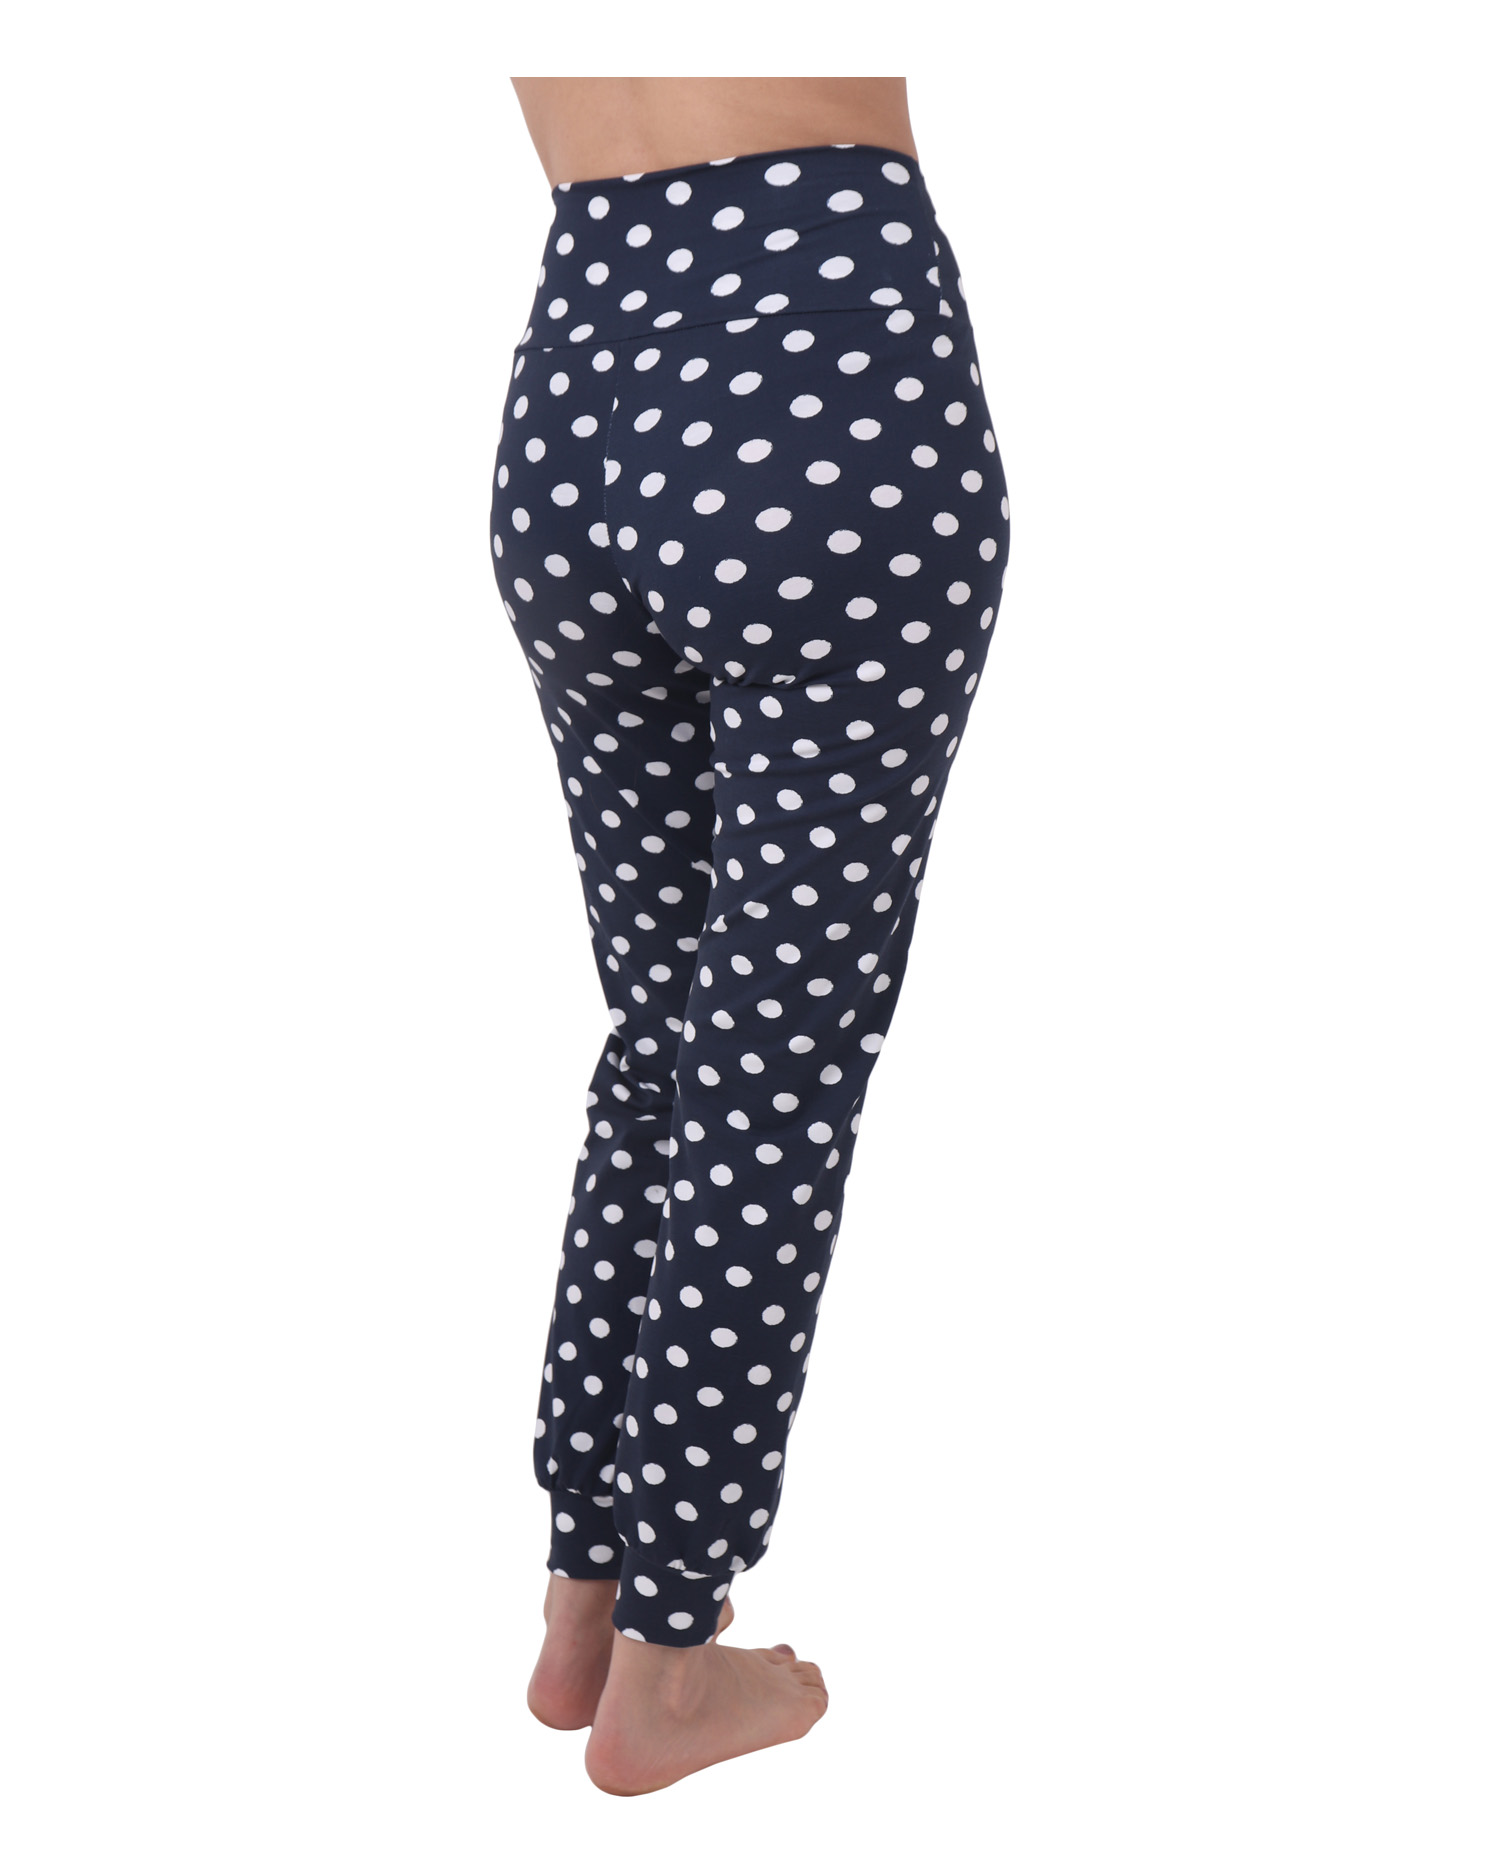 Women's pajama pants, blue polka dot, XS/S